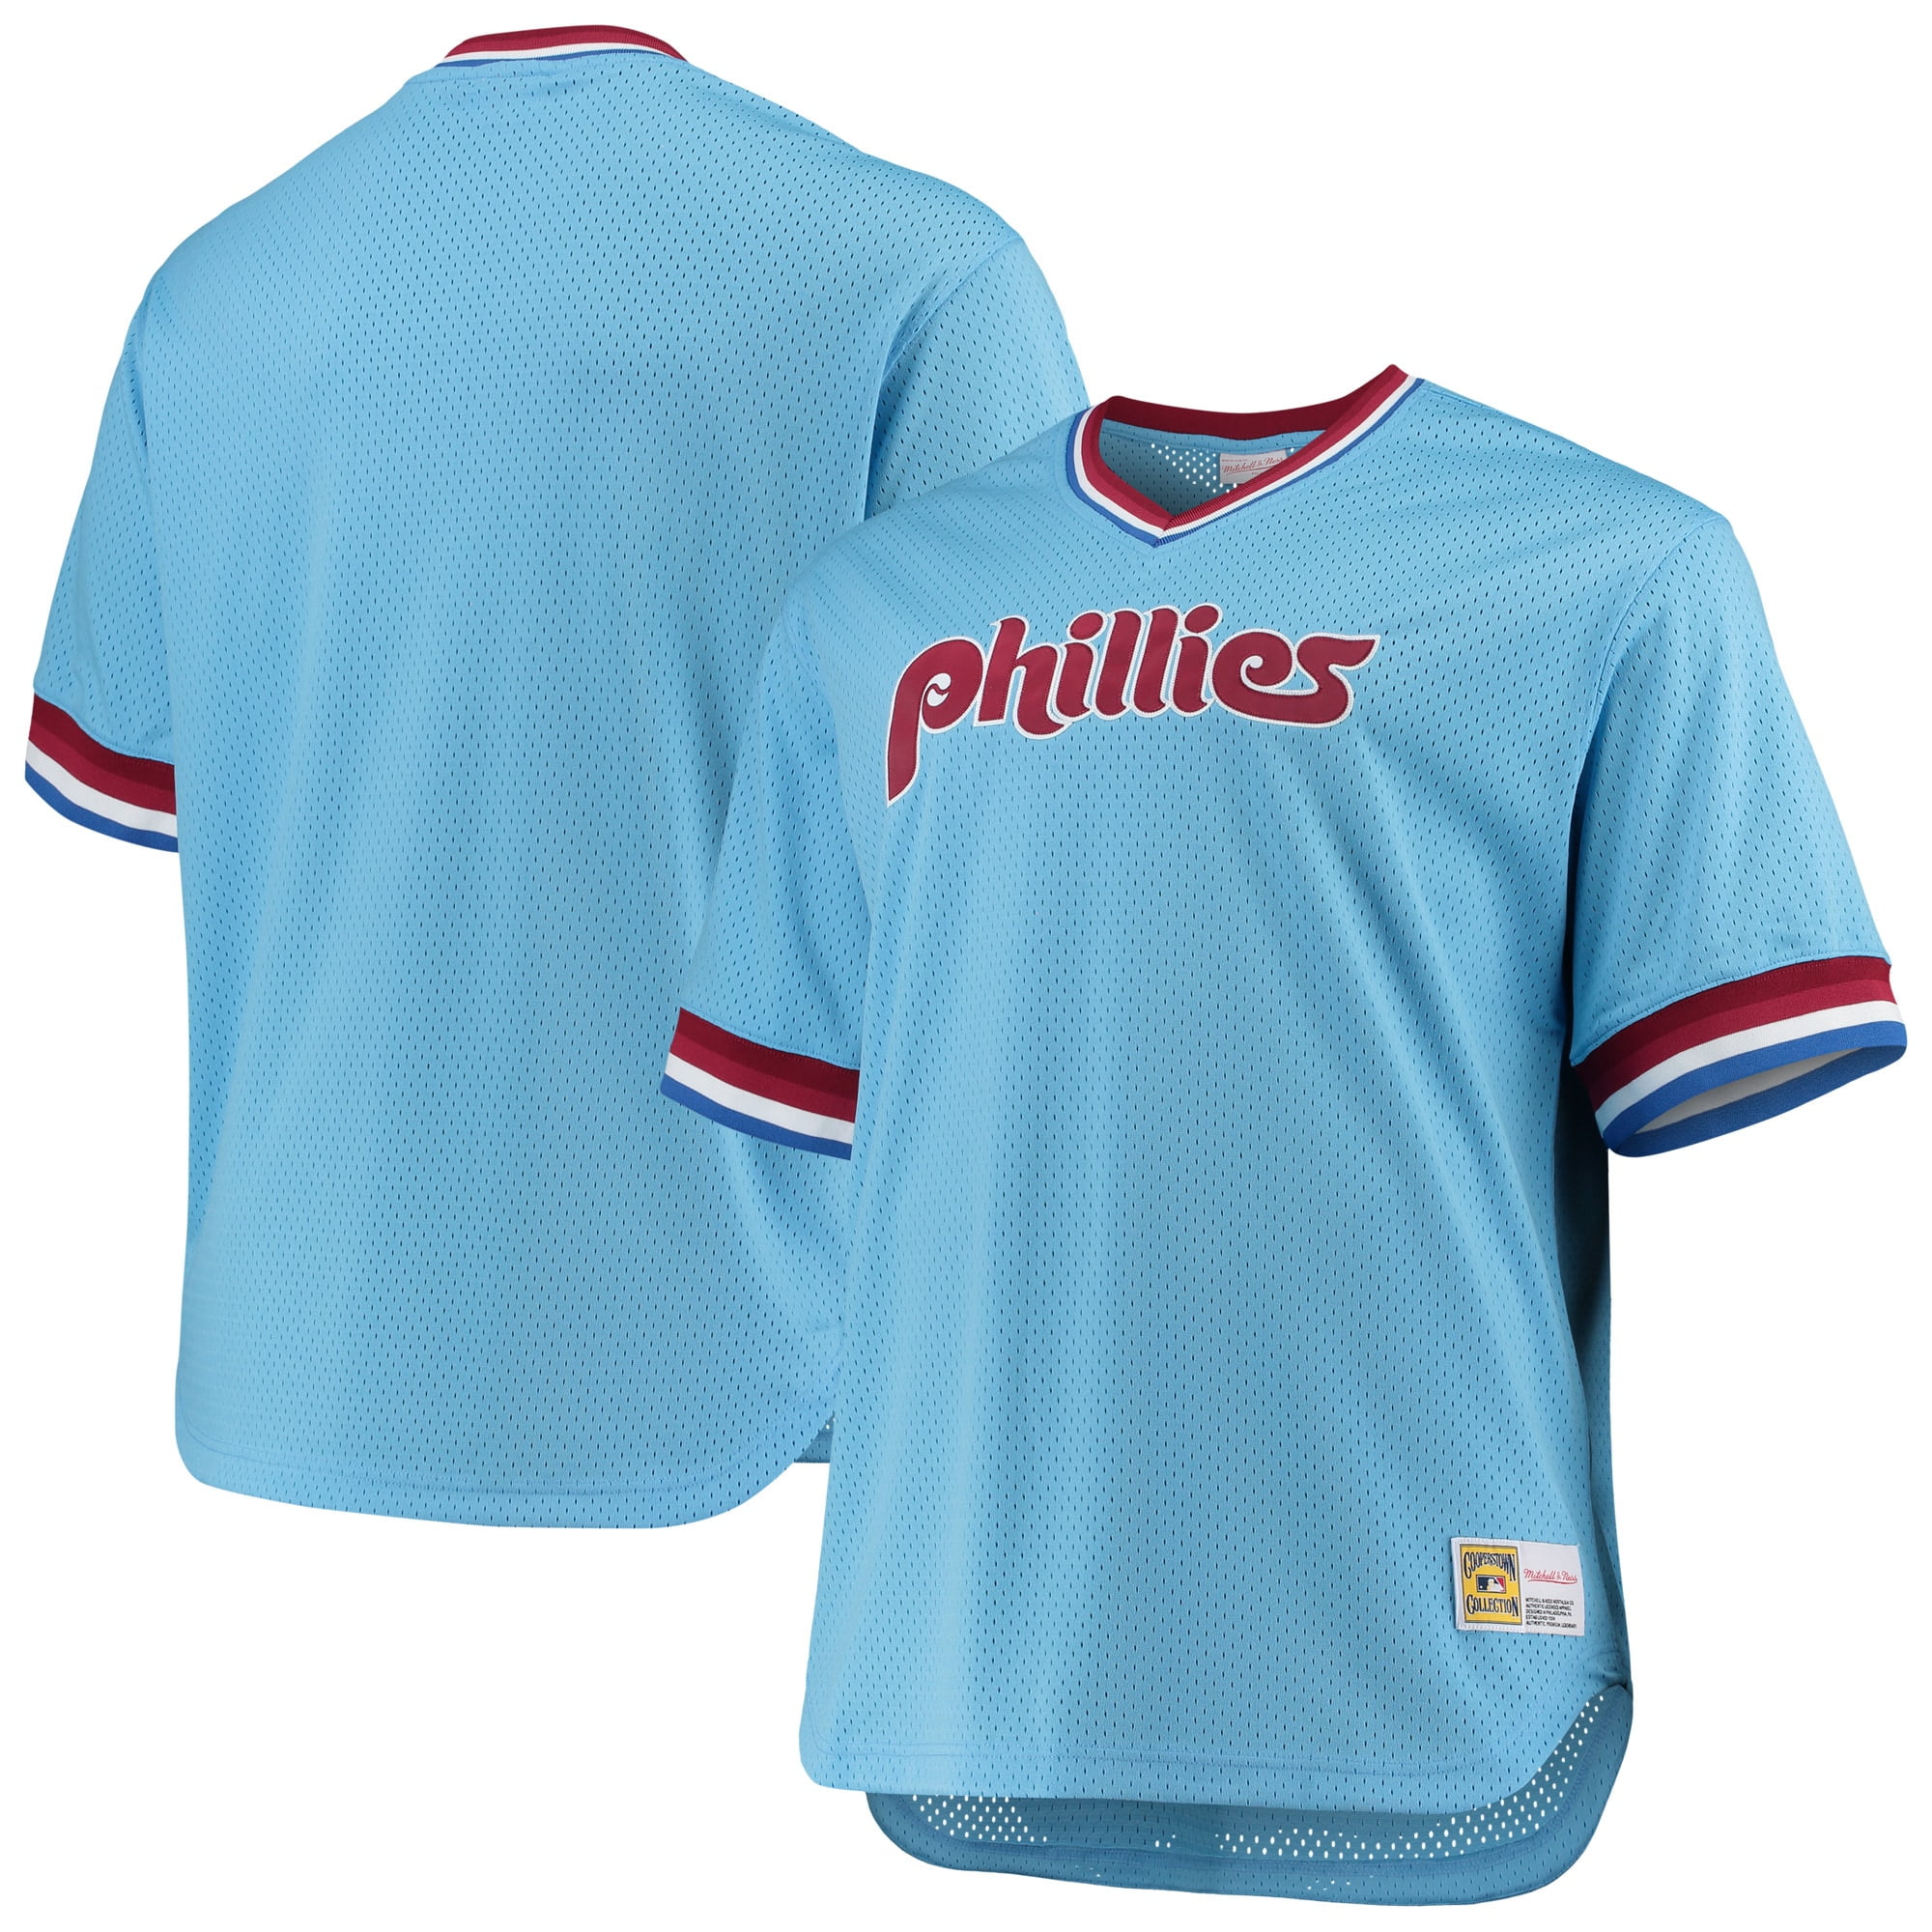 phillies blue jersey